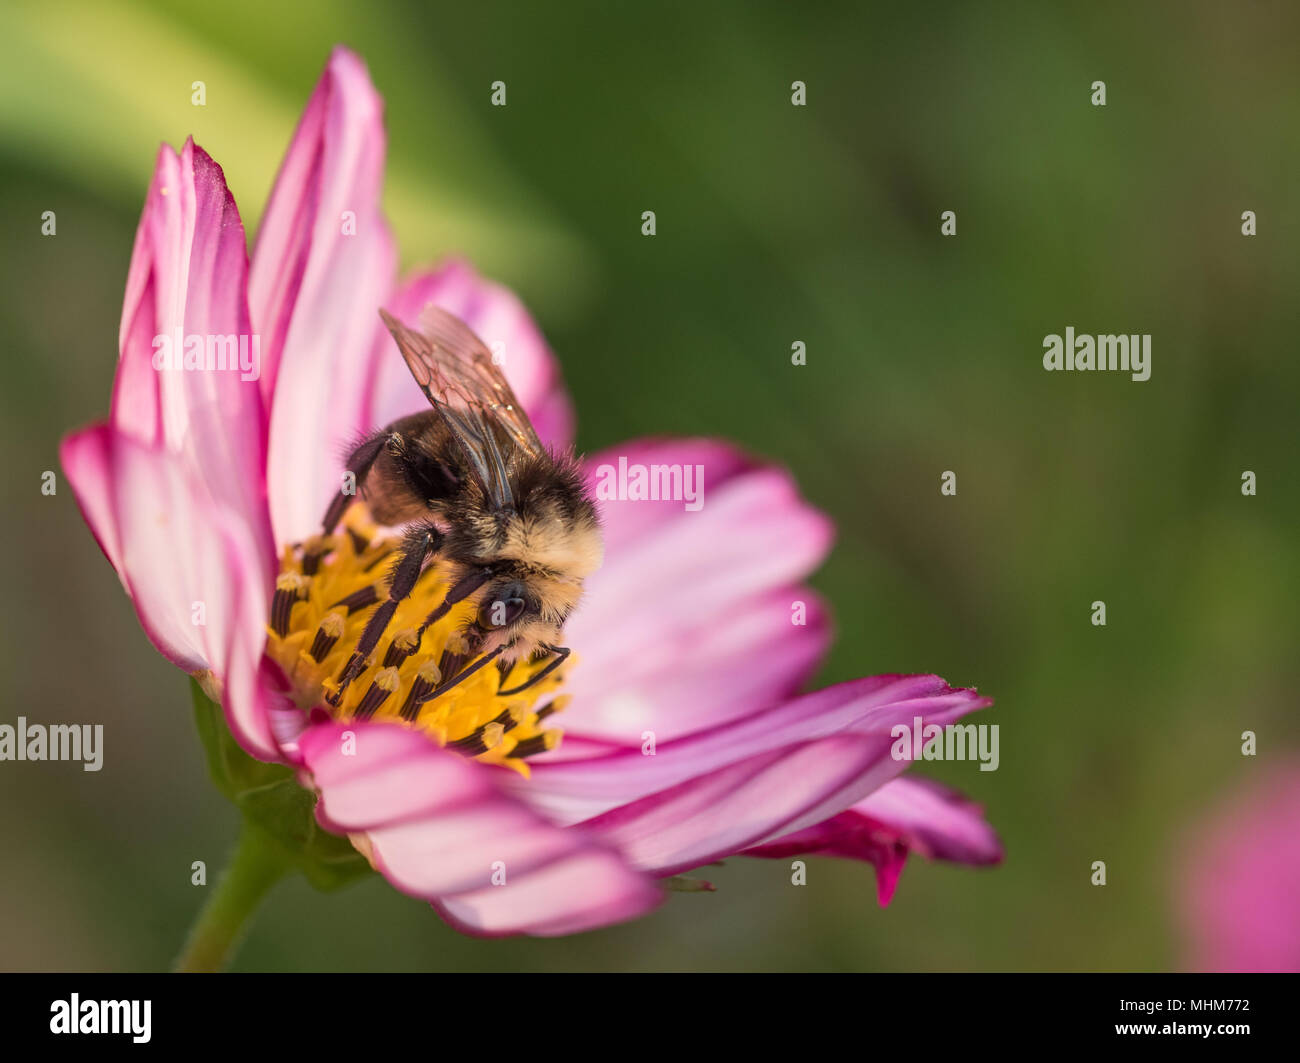 Un trabajador de abejorros (Bombus) polinizando una flor rosa y blanca Cosmos (Cosmos bipinnatus) con un fondo verde suave. Foto de stock